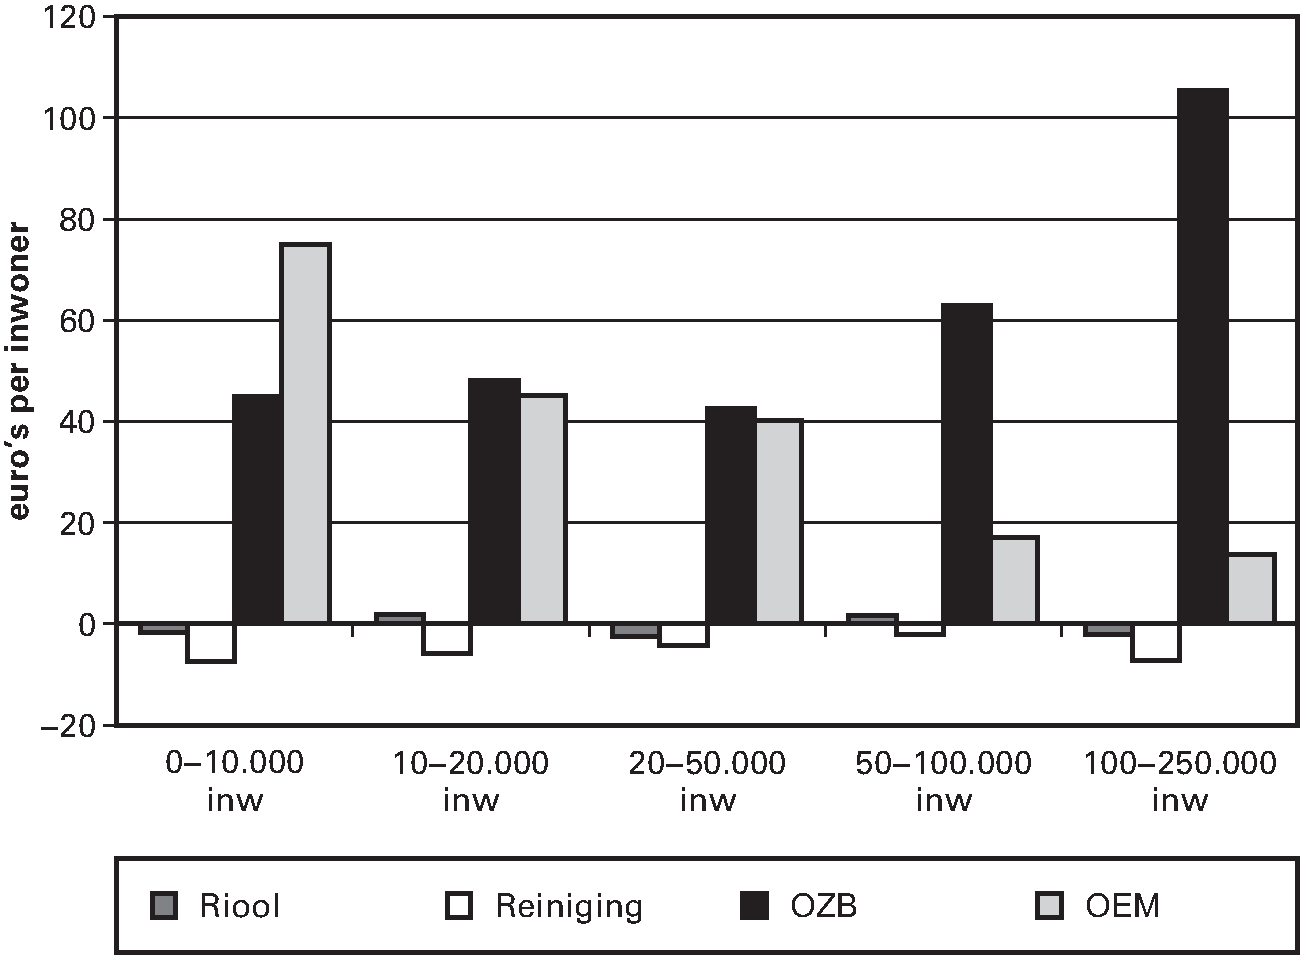 Figuur 3.4. Verschil tussen de begrote en veronderstelde netto inkomsten bij de clusters Riool, Reiniging, OZB en OEM (exclusief de mutatie reserves) in 2015 naar groottegroepen (euro's per inwoner; 377 gemeenten)